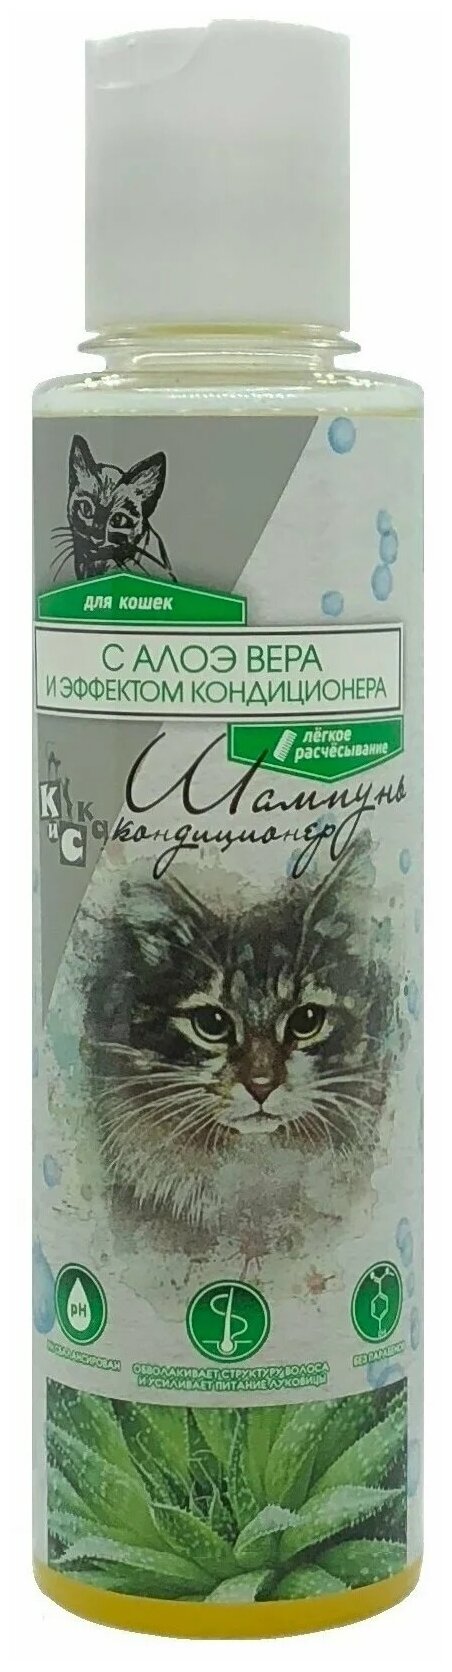 Зоошампунь для кошек 2в1 с Алоэ Вера и кондиционером 240мл. 2014